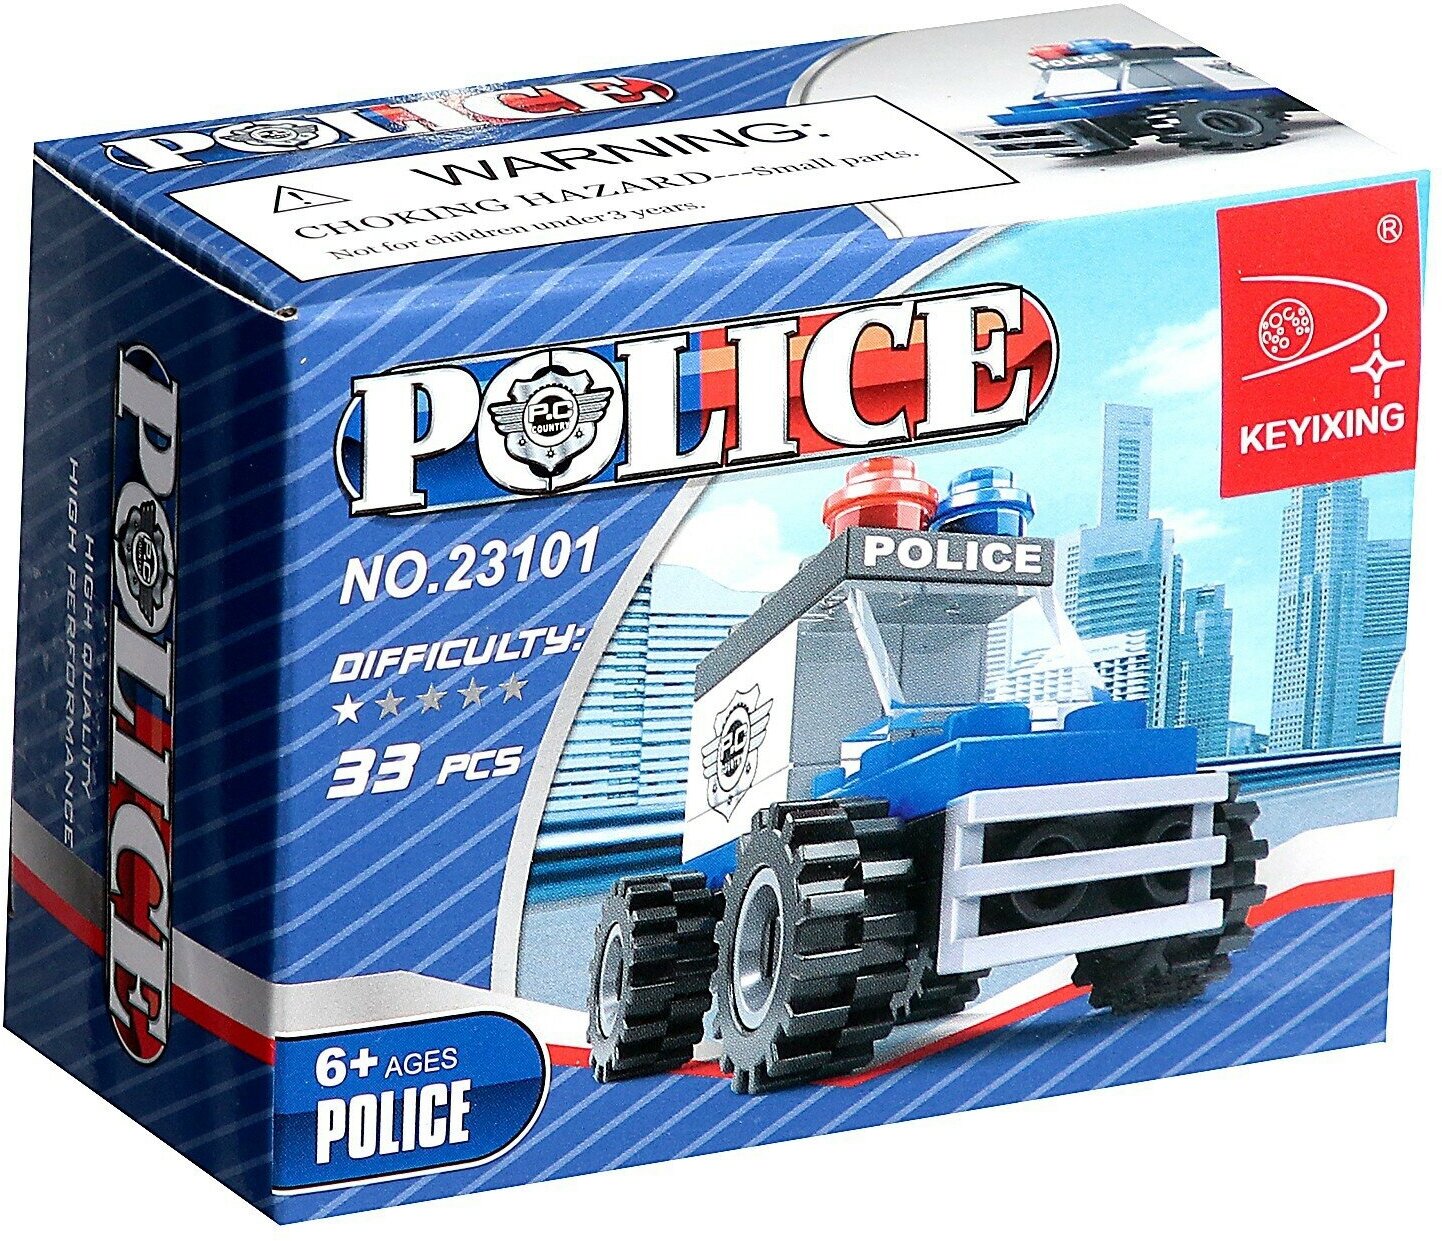 Конструктор "Полицейский джип", развивающий, подвижные детали, фигурка в комплекте, 33 детали, совместим с лего, для детей и малышей